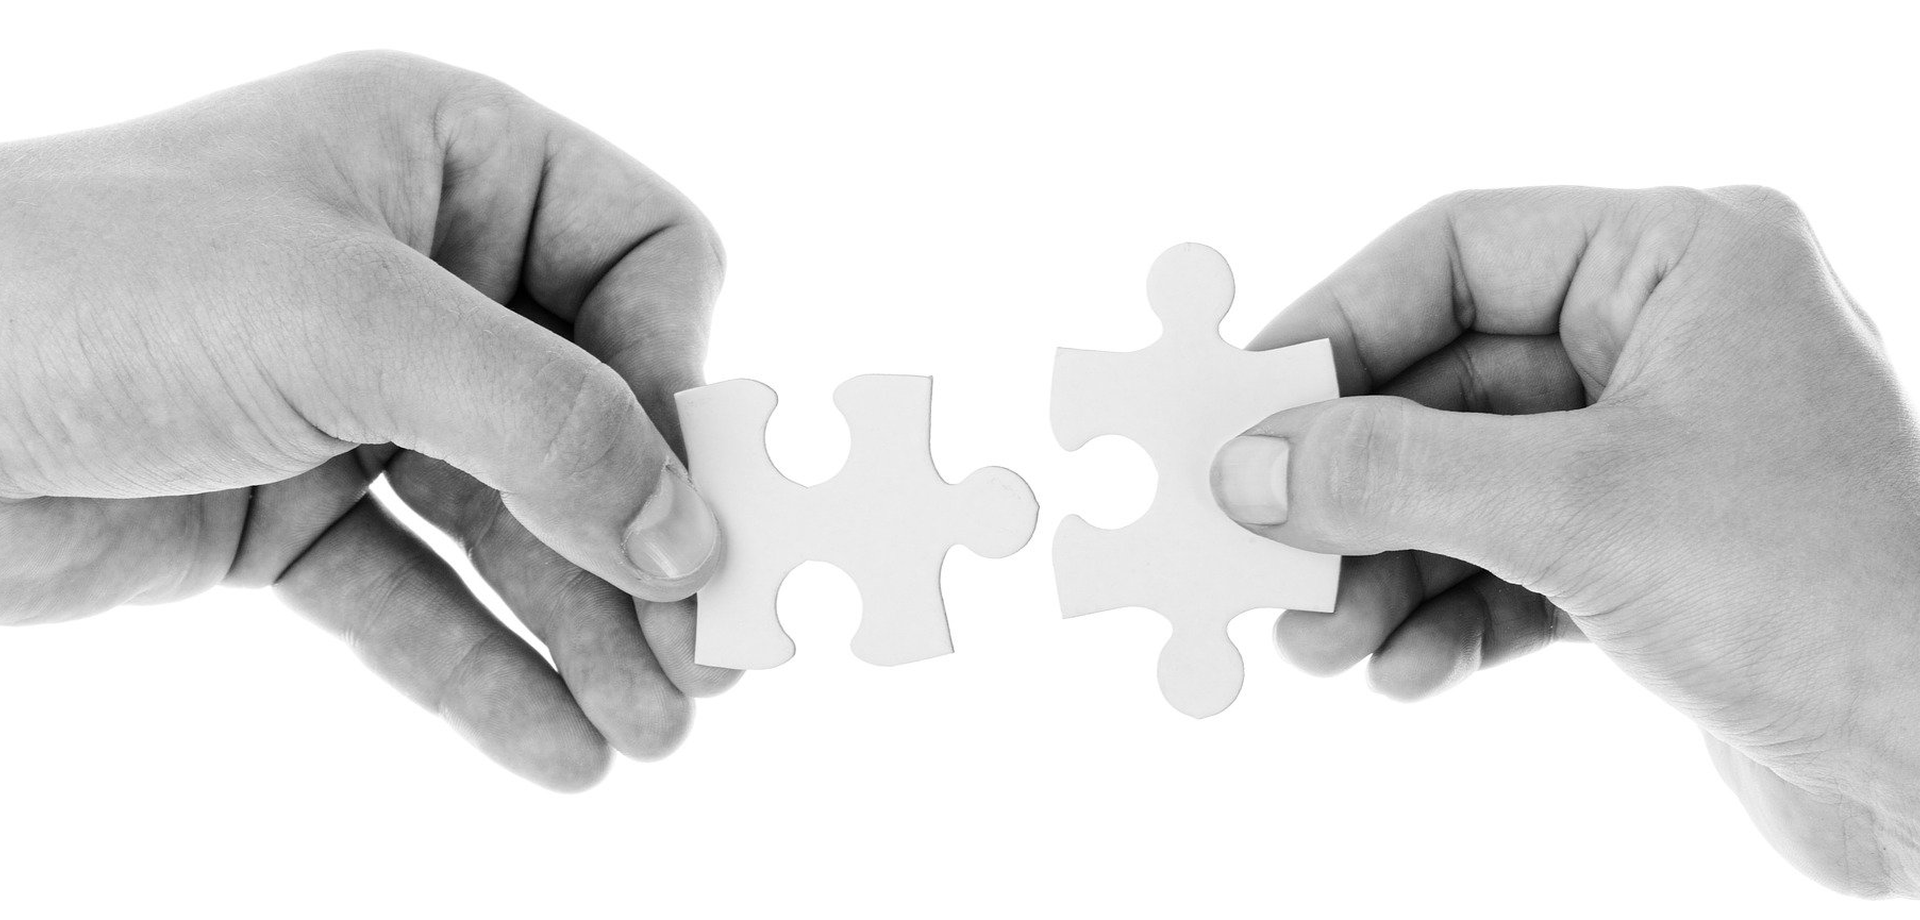 Zwei Hände halten jeweils ein Puzzle-Teil und führen sie zusammen.